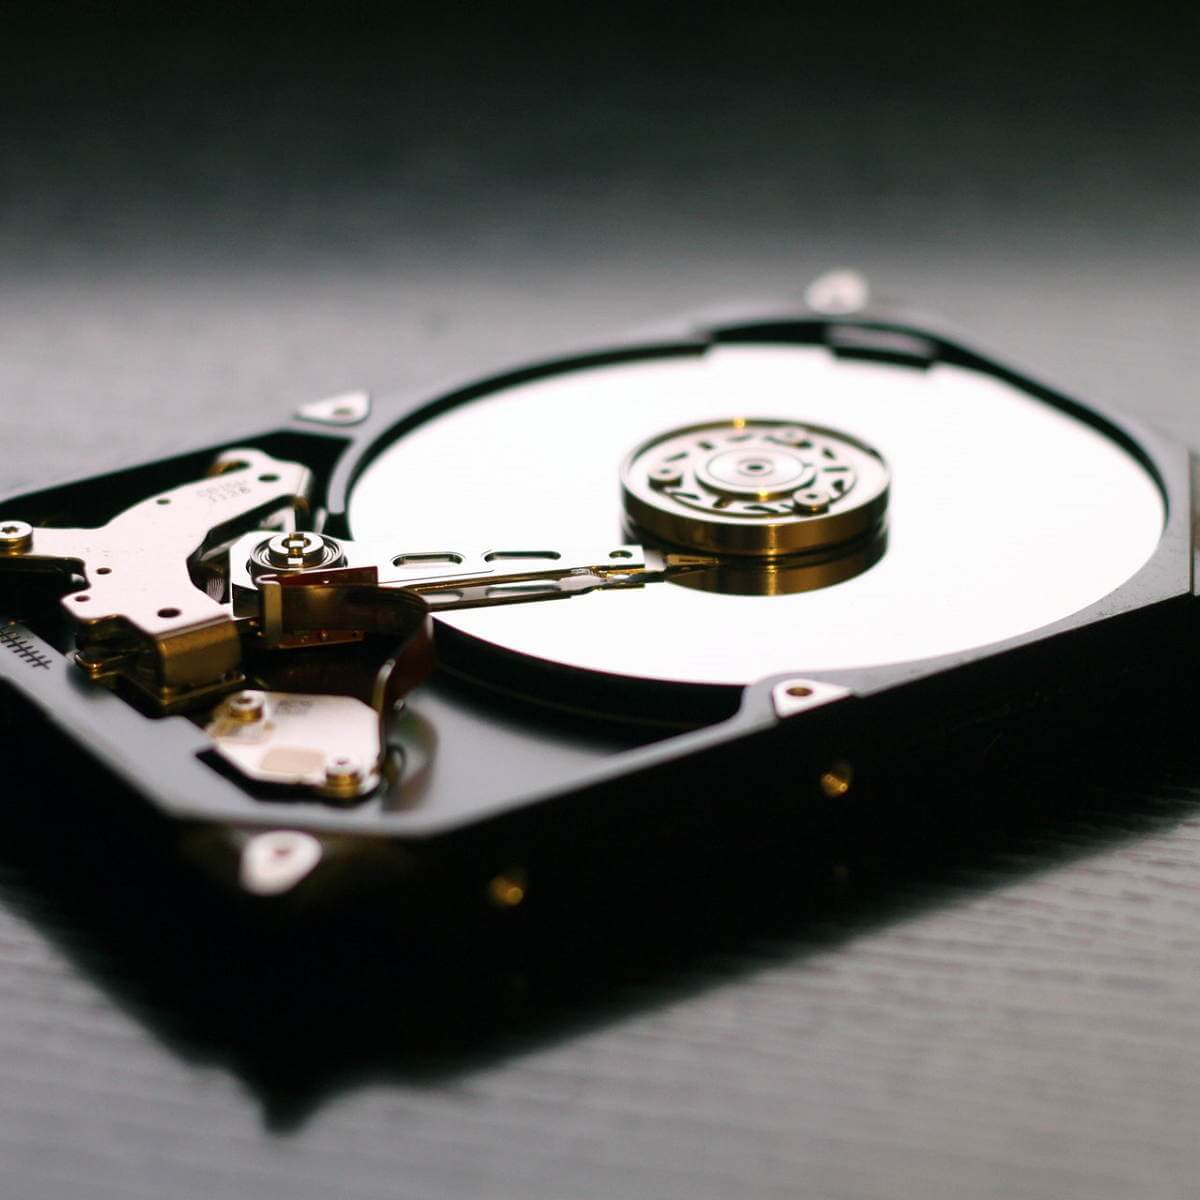 fix permissions on external hard drive